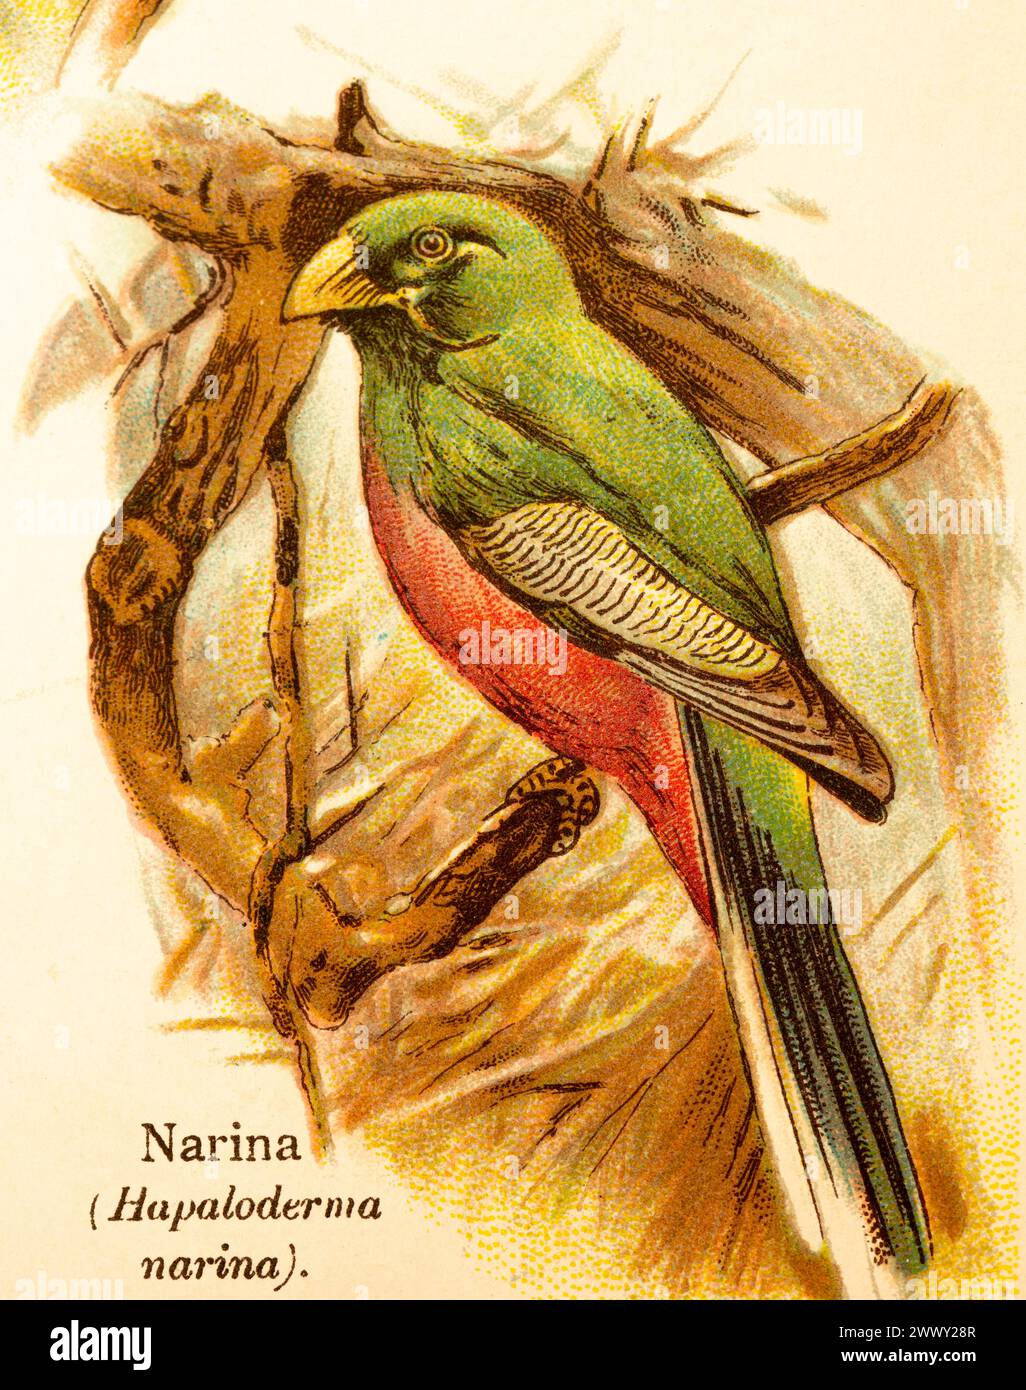 Narina or narina trogon (Apaloderma narina) branches, green, red, historical illustration, World of Birds 1890 Stock Photo